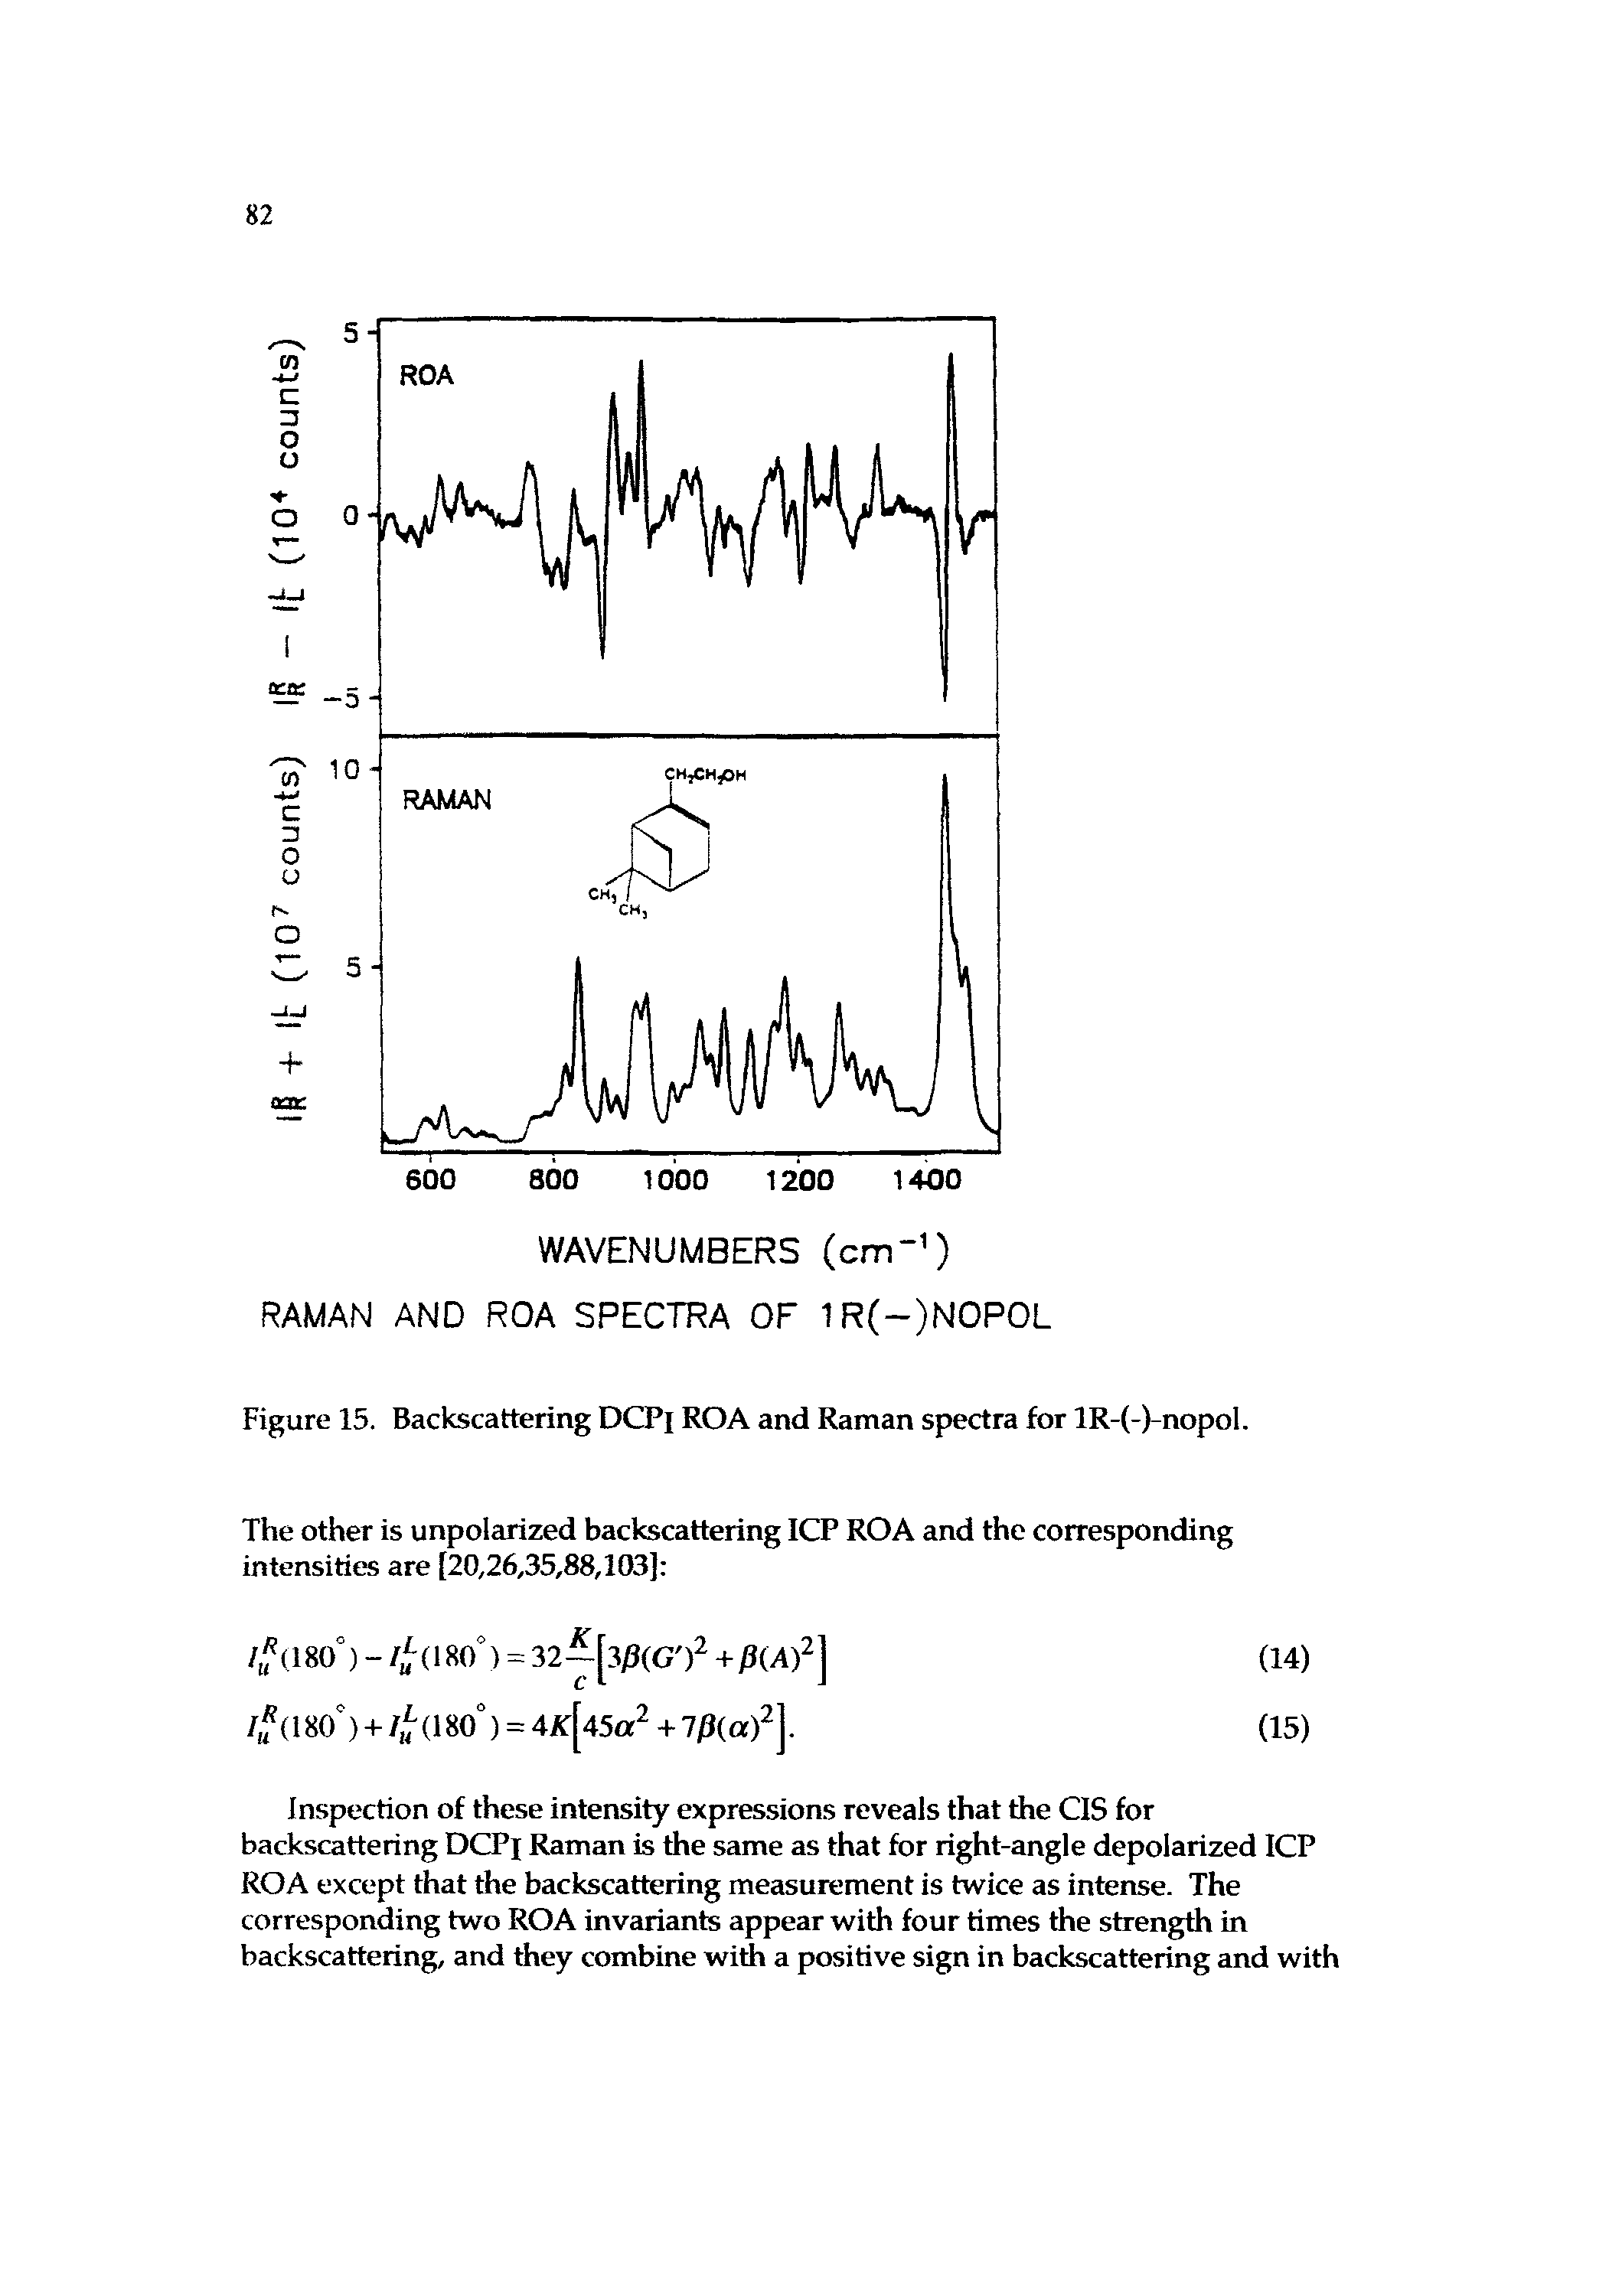 Figure 15. Backscattering DCPi ROA and Raman spectra for lR-(-)-nopol.